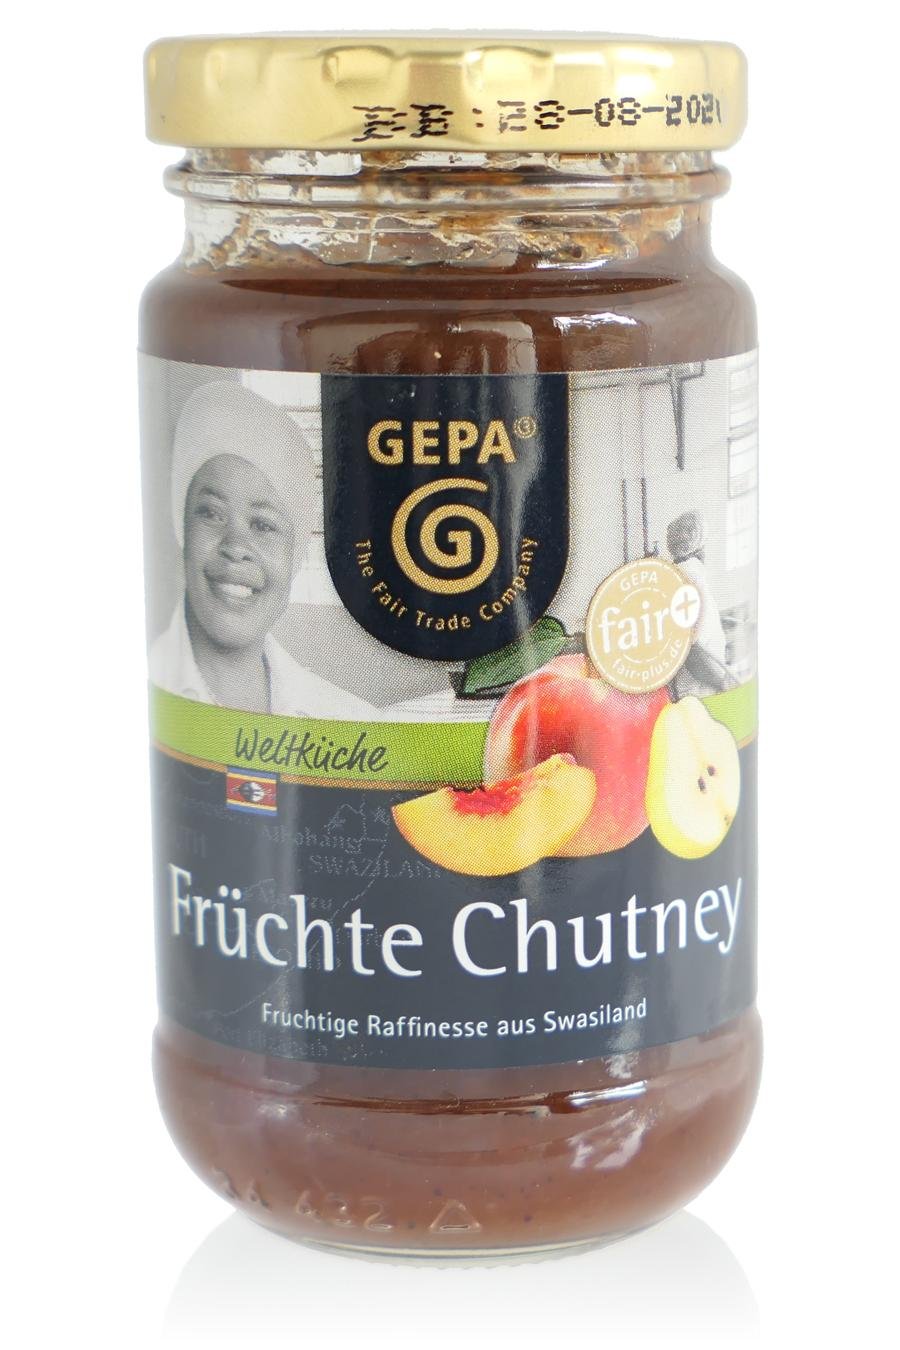 Chutney Fruechte (c) M. Kerk